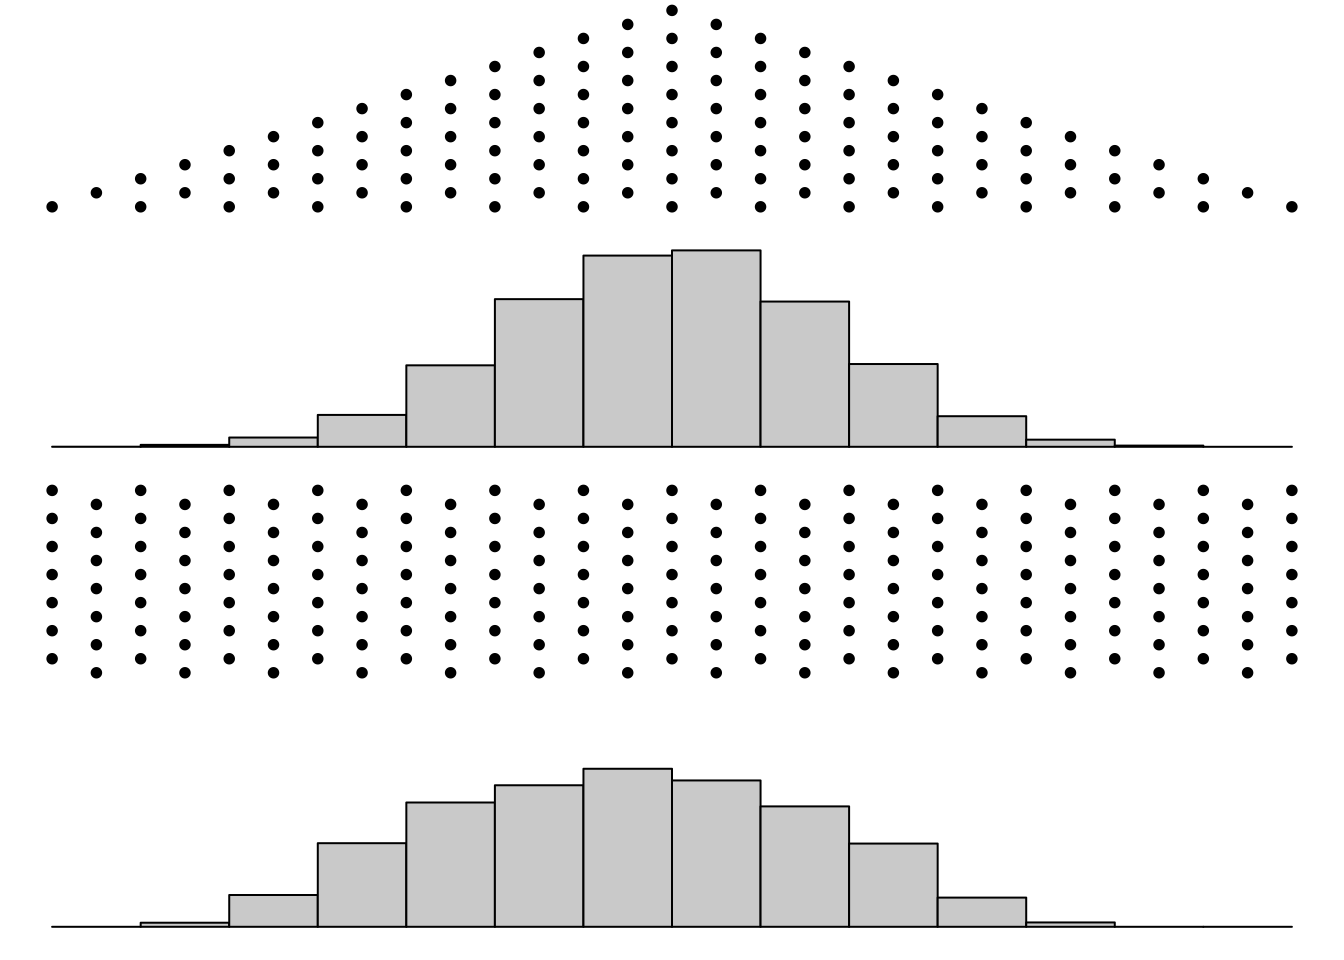 双层高尔顿钉板对回归现象的演示，第一层产生的离散分布通过第二层钉板并未出现进一步的分散